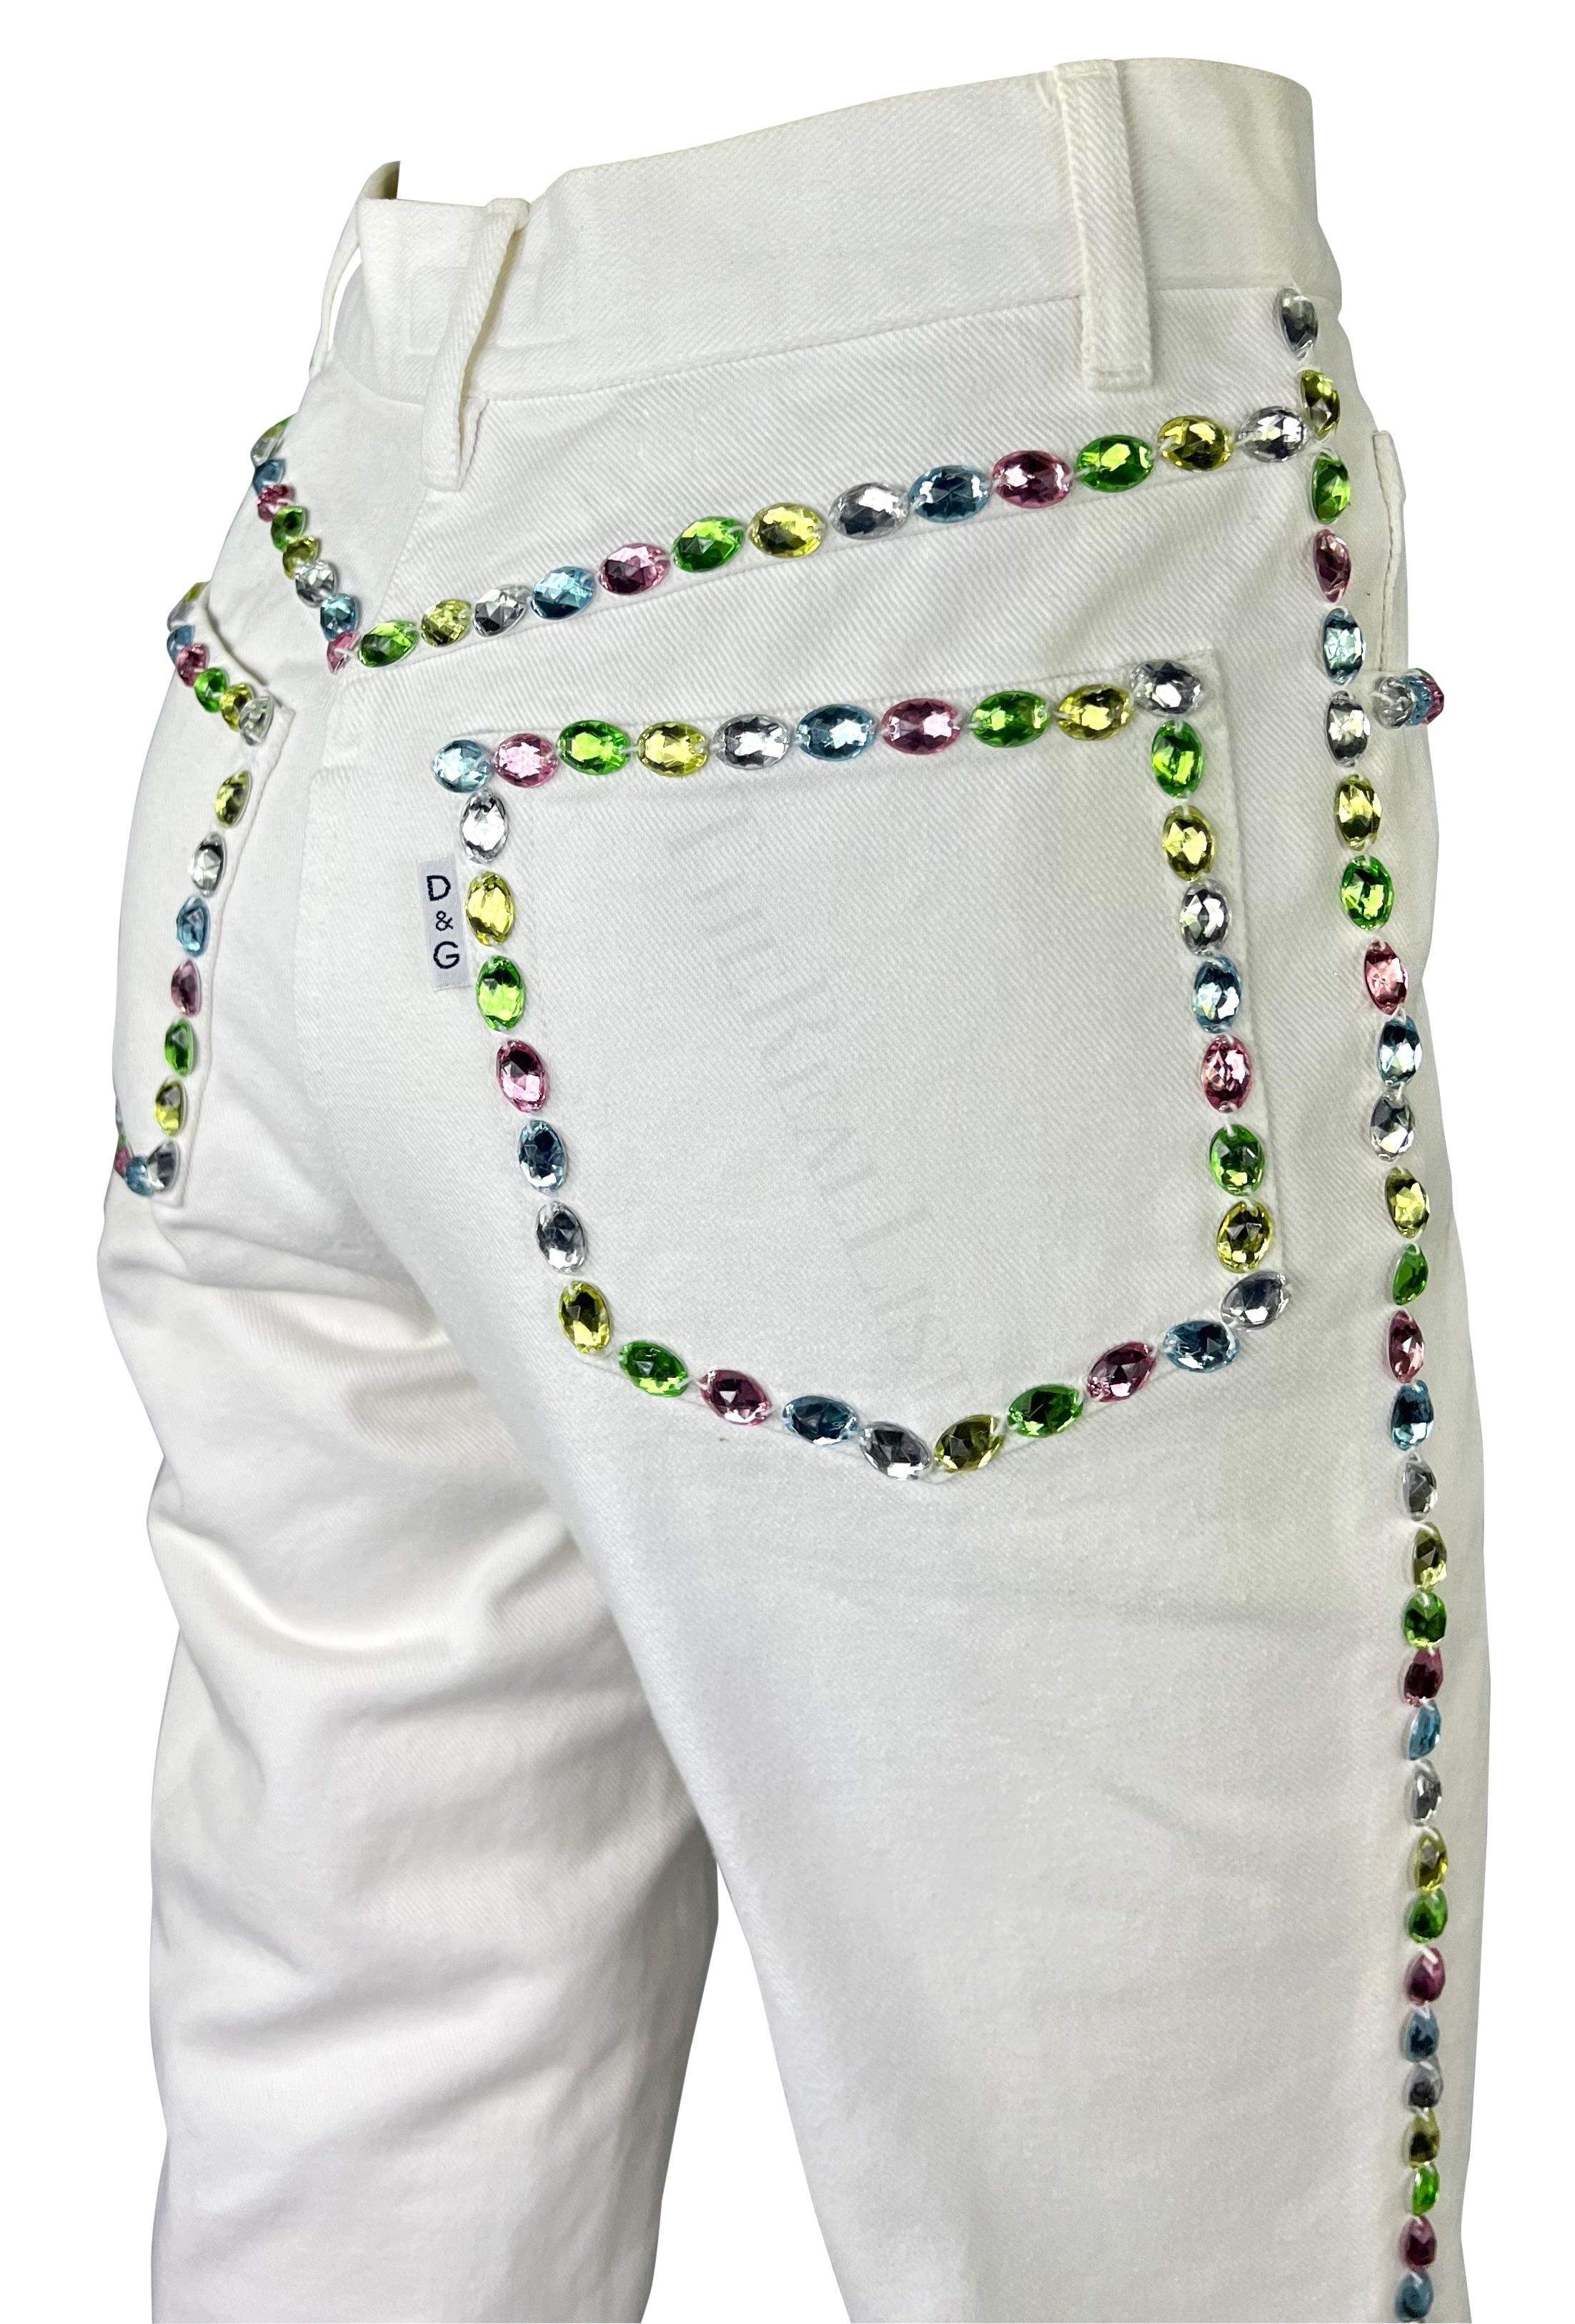 Whiting présente un pantalon Dolce & Gabbana en denim blanc orné de strass. Datant du début des années 1990, ce pantalon en denim à taille haute est rehaussé de strass de couleurs pastel variées qui accentuent les coutures du pantalon. Ce jean blanc